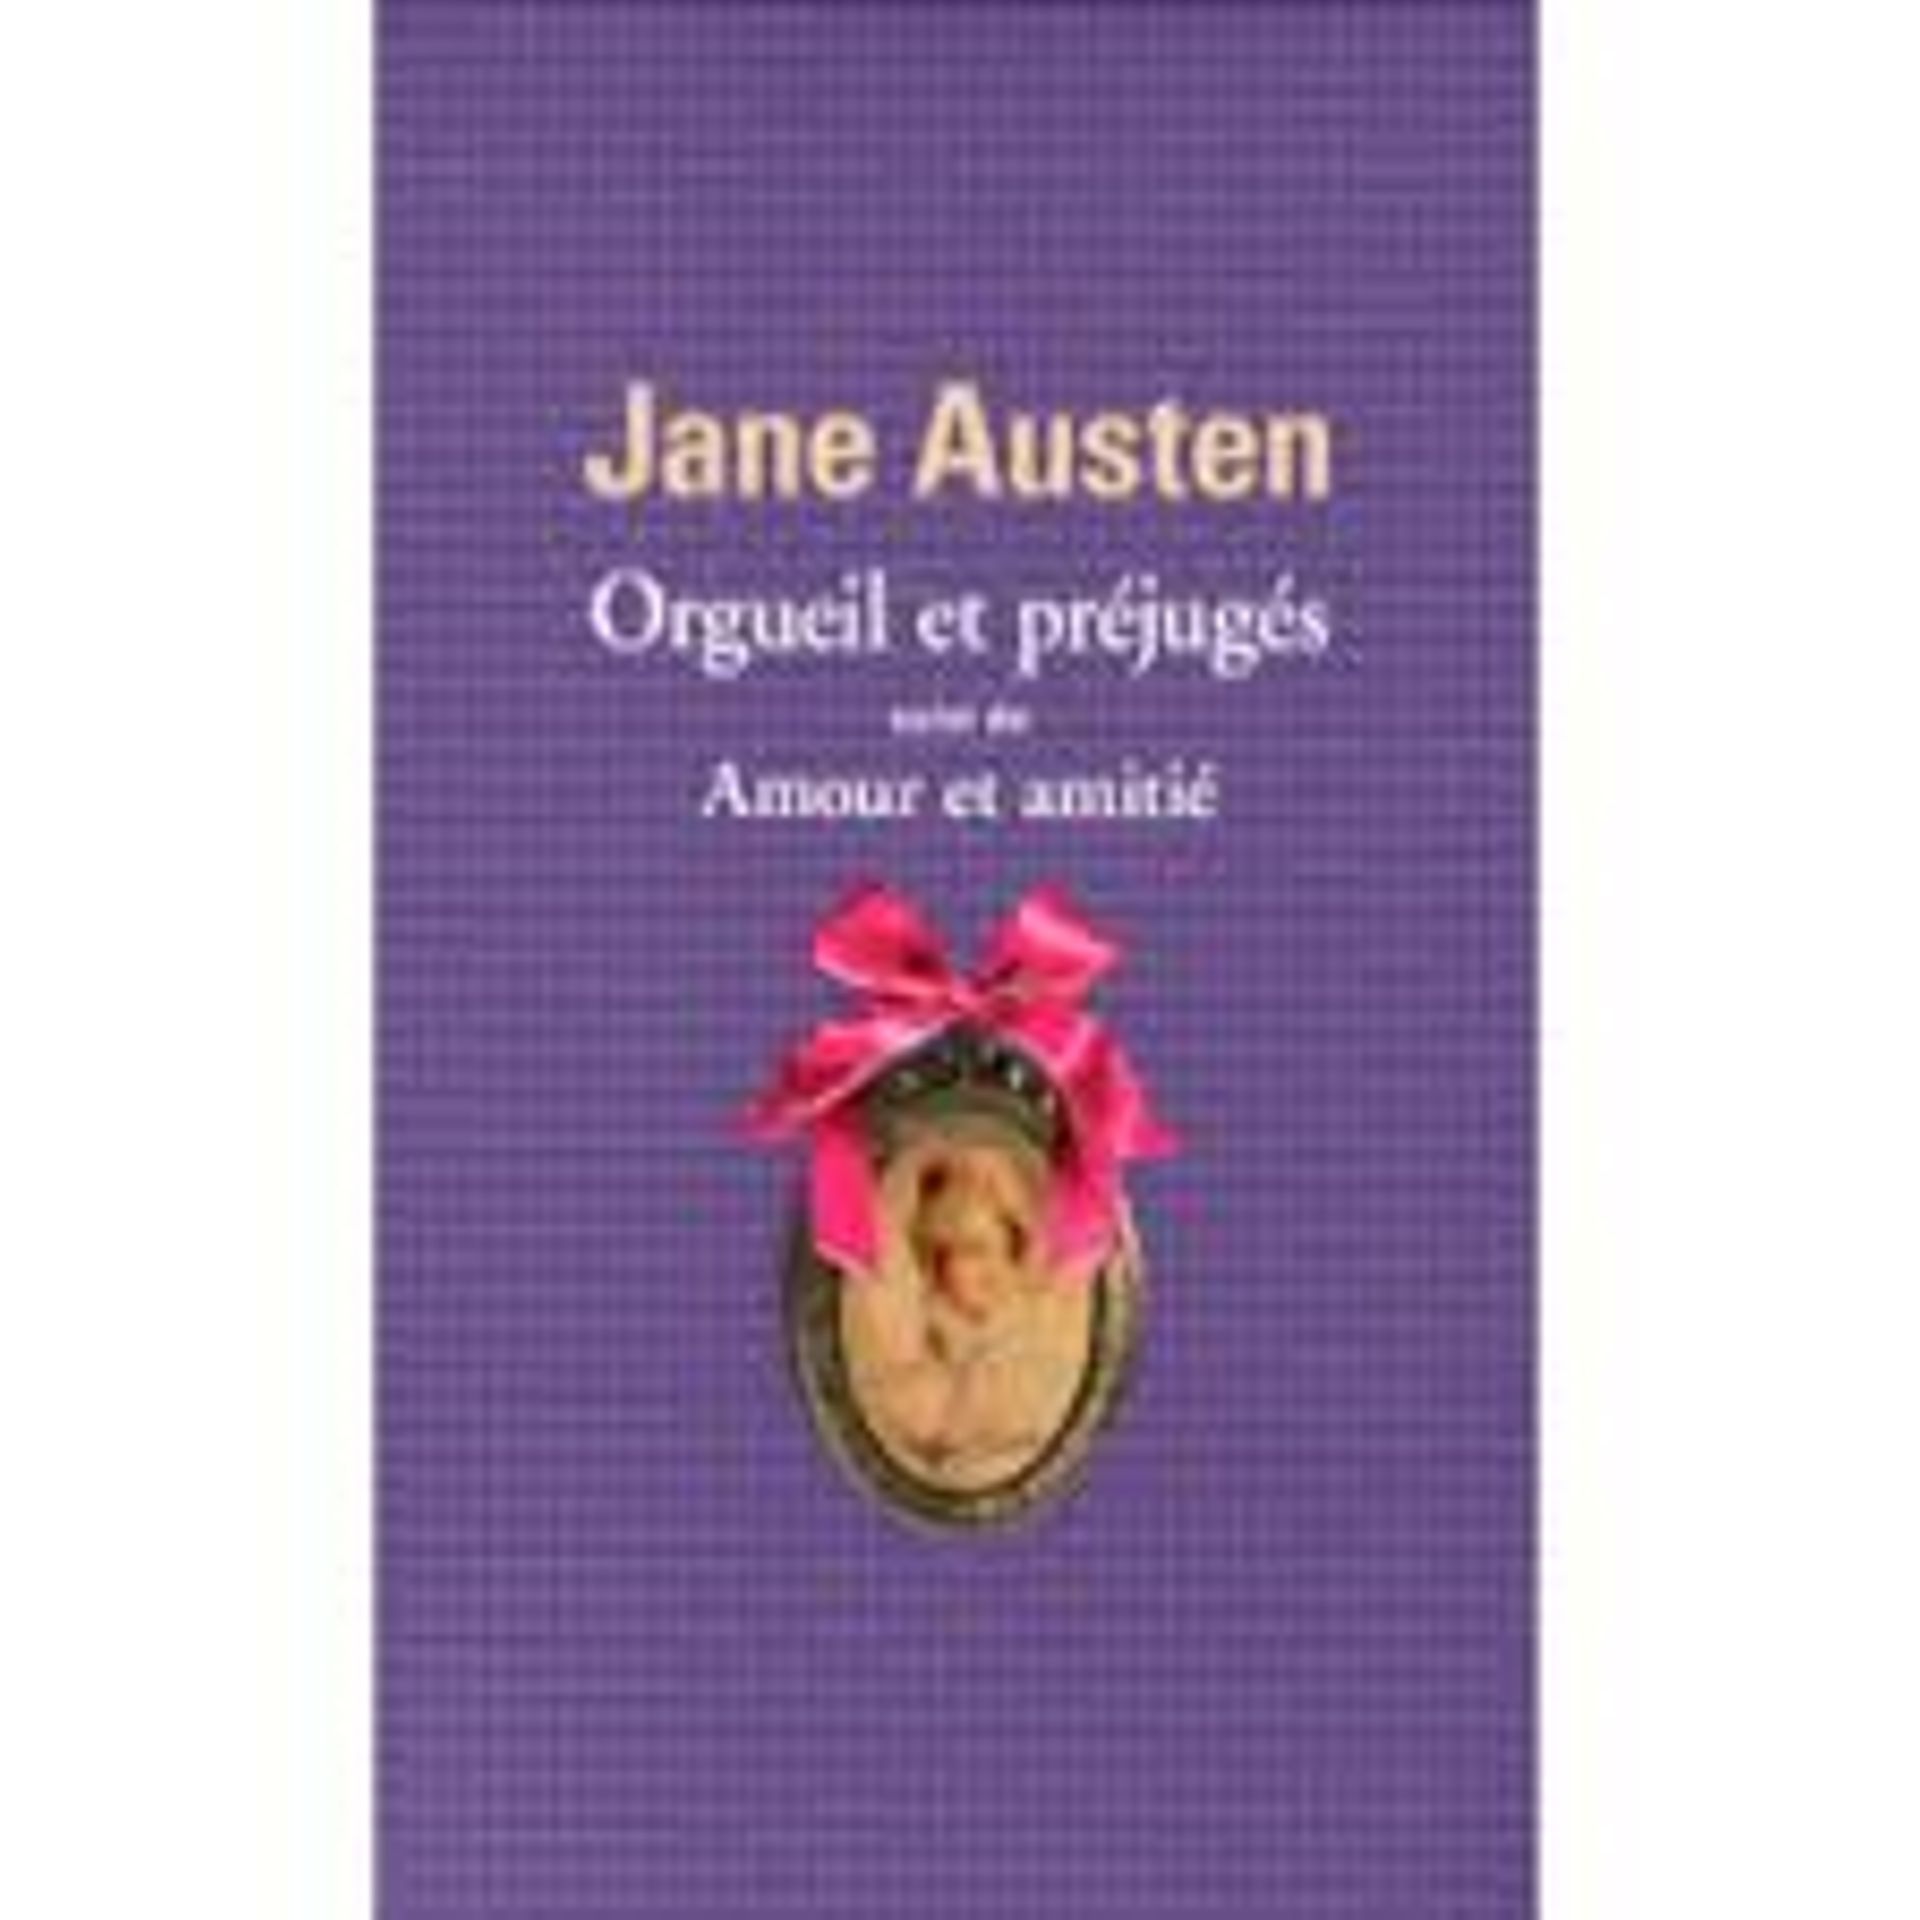 "Orgueil et préjugés" suivi de "Amour et amitié" de Jane Austen chez Folio